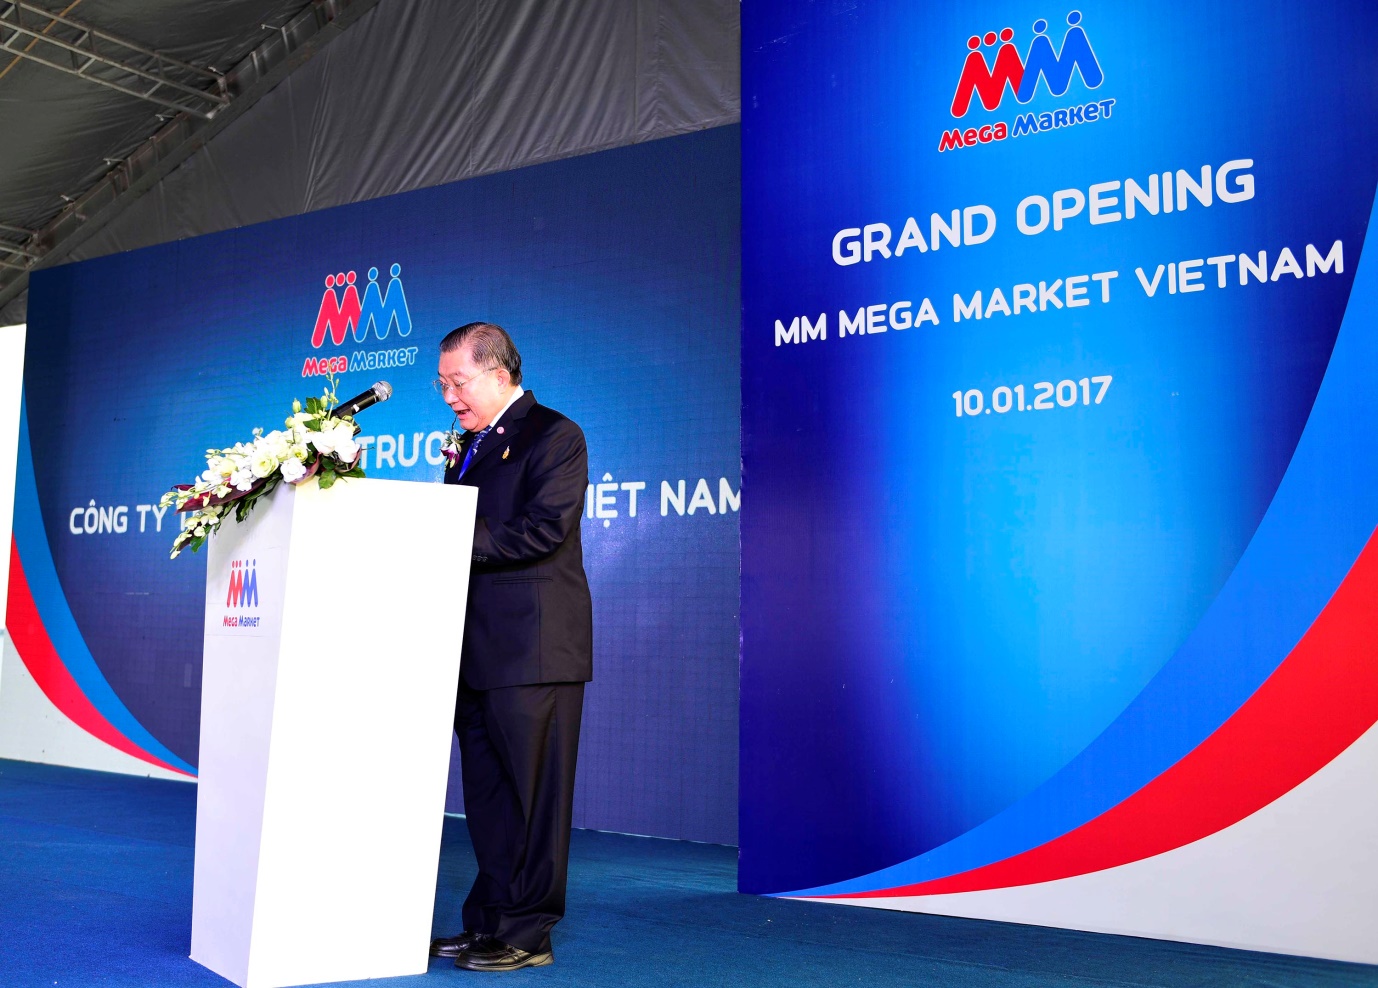 sau hơn 1 năm hoàn thành mọi việc chuyển giao từ Tập đoàn Metro sang Tập đoàn TCC, đã đến thời điểm TCC đổi tên doanh nghiệp, và cho ra đời thương hiệu mới MM Mega Market Việt Nam. 